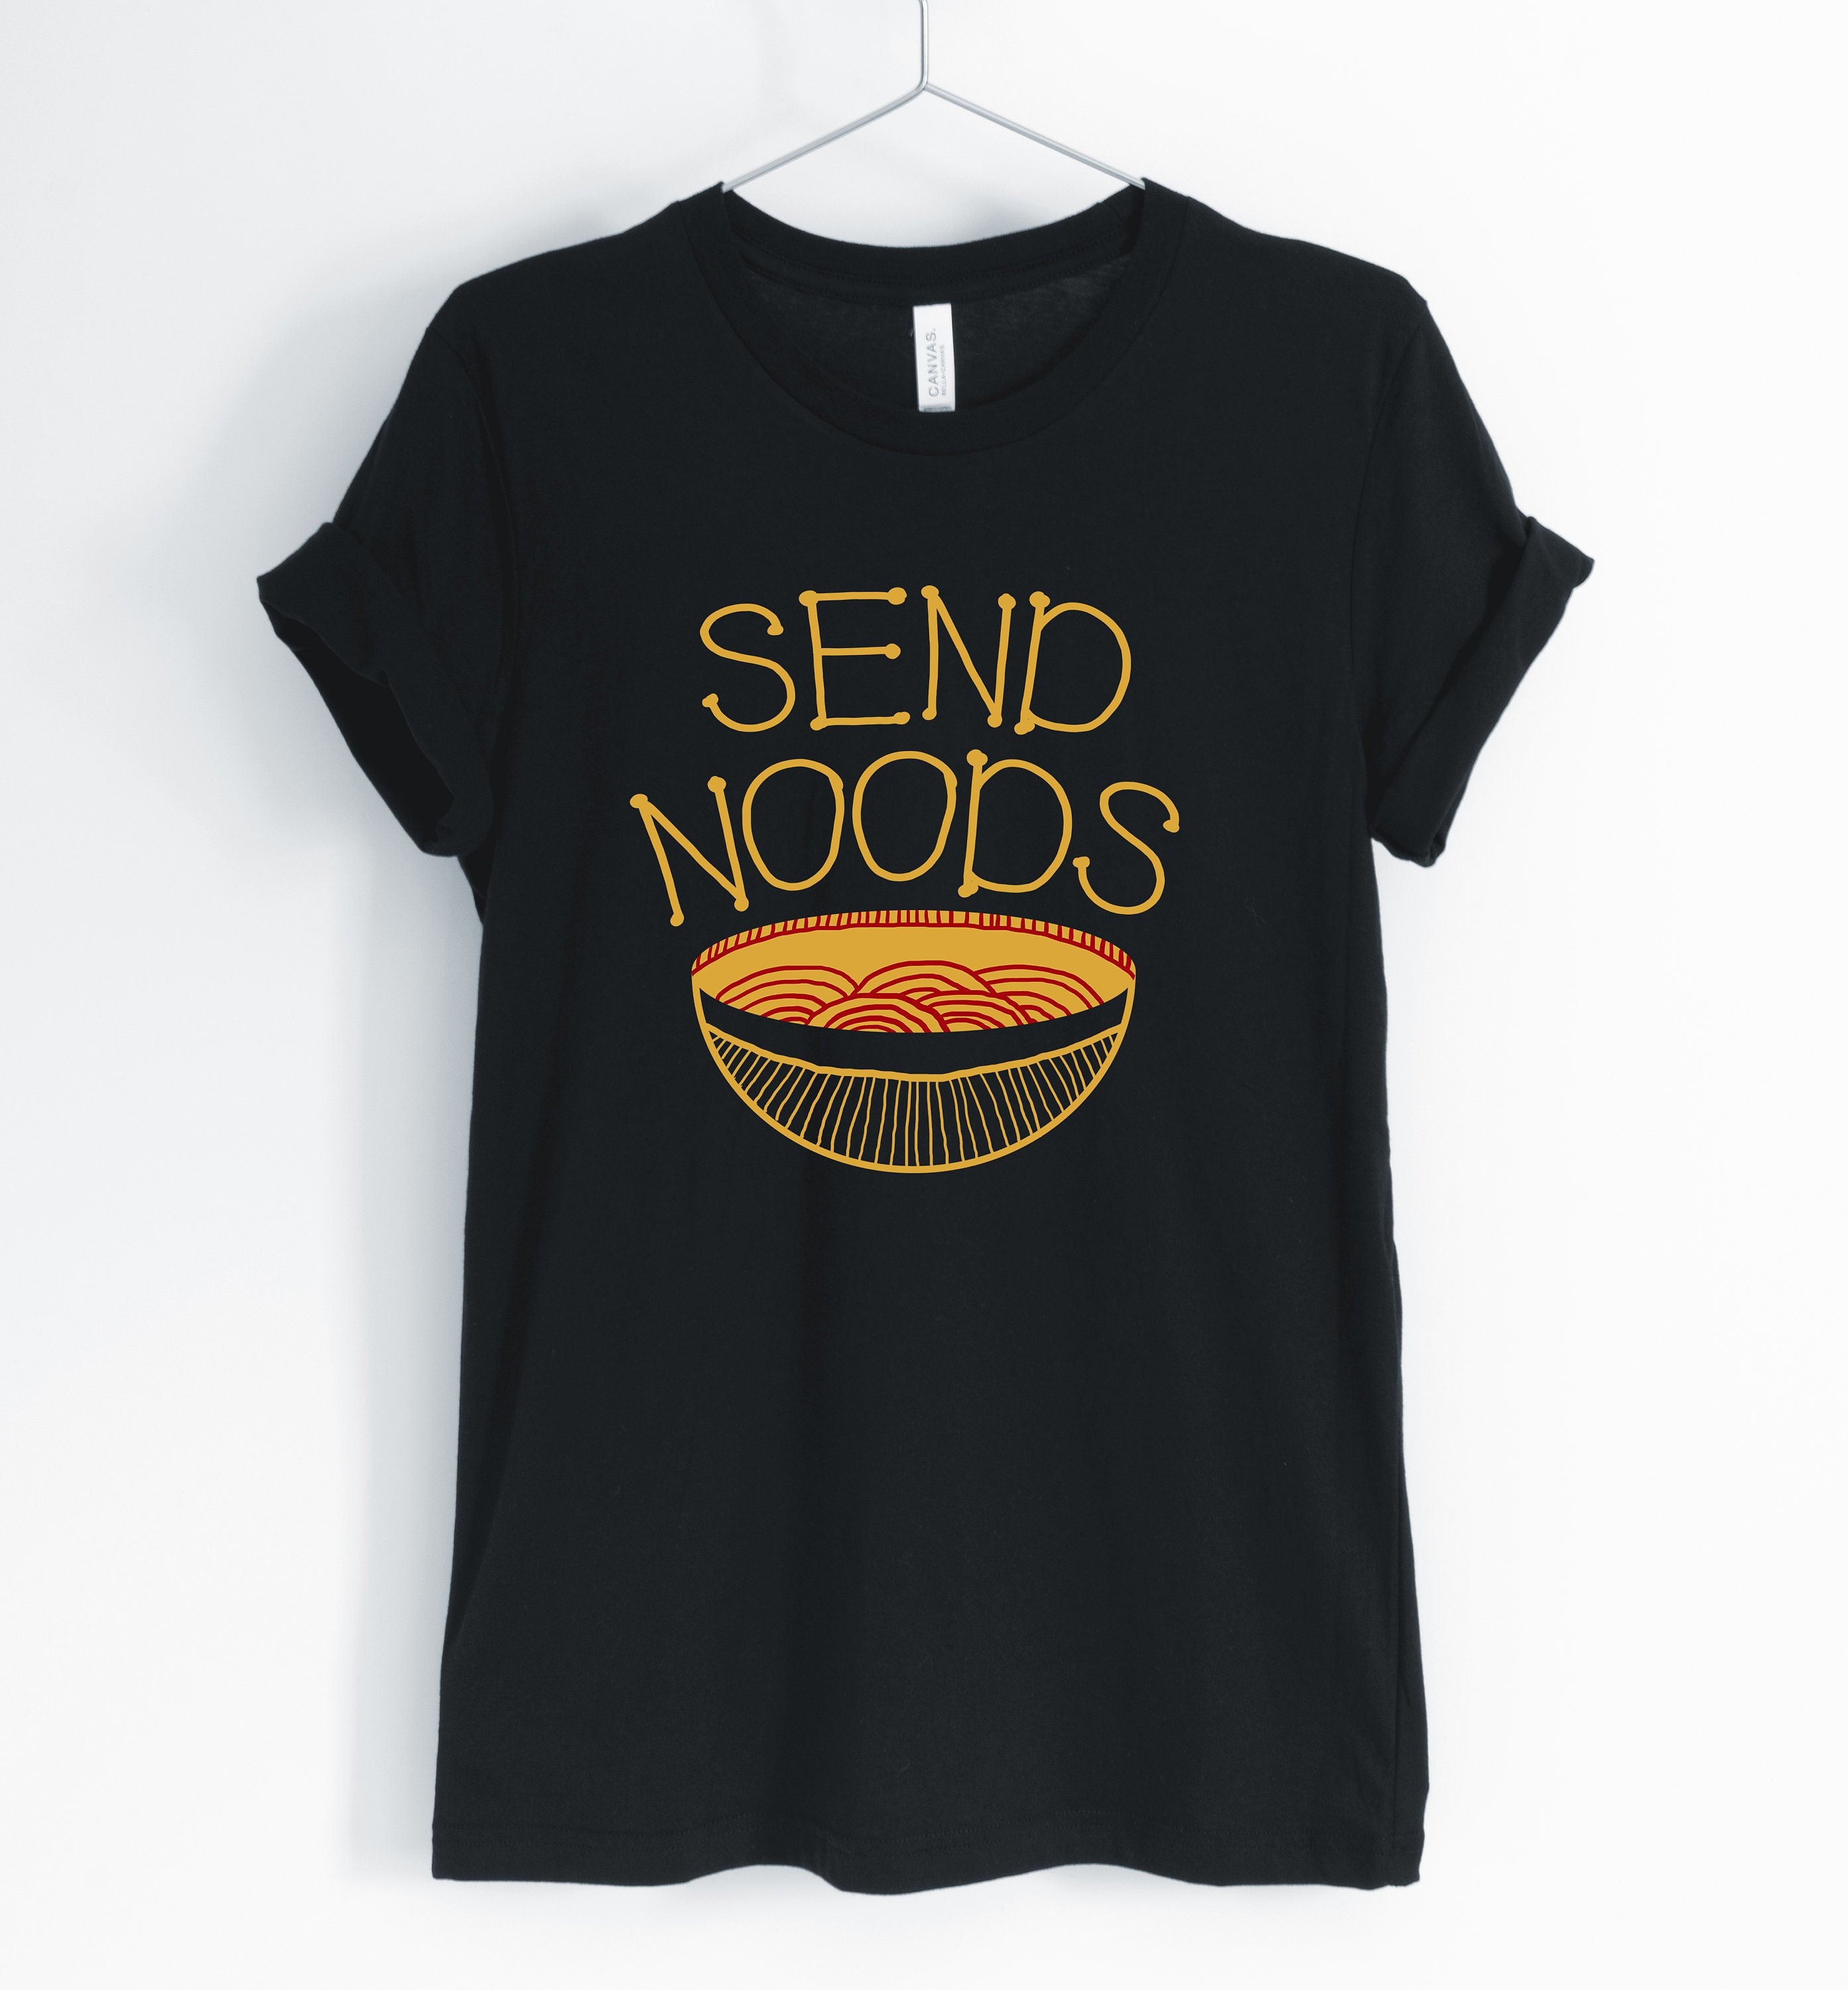 Send Noods, Ramen, Ramen Shirt, Funny Cute Pun, Lover T-Shirt, Gift, Unisex & Women's Shirts